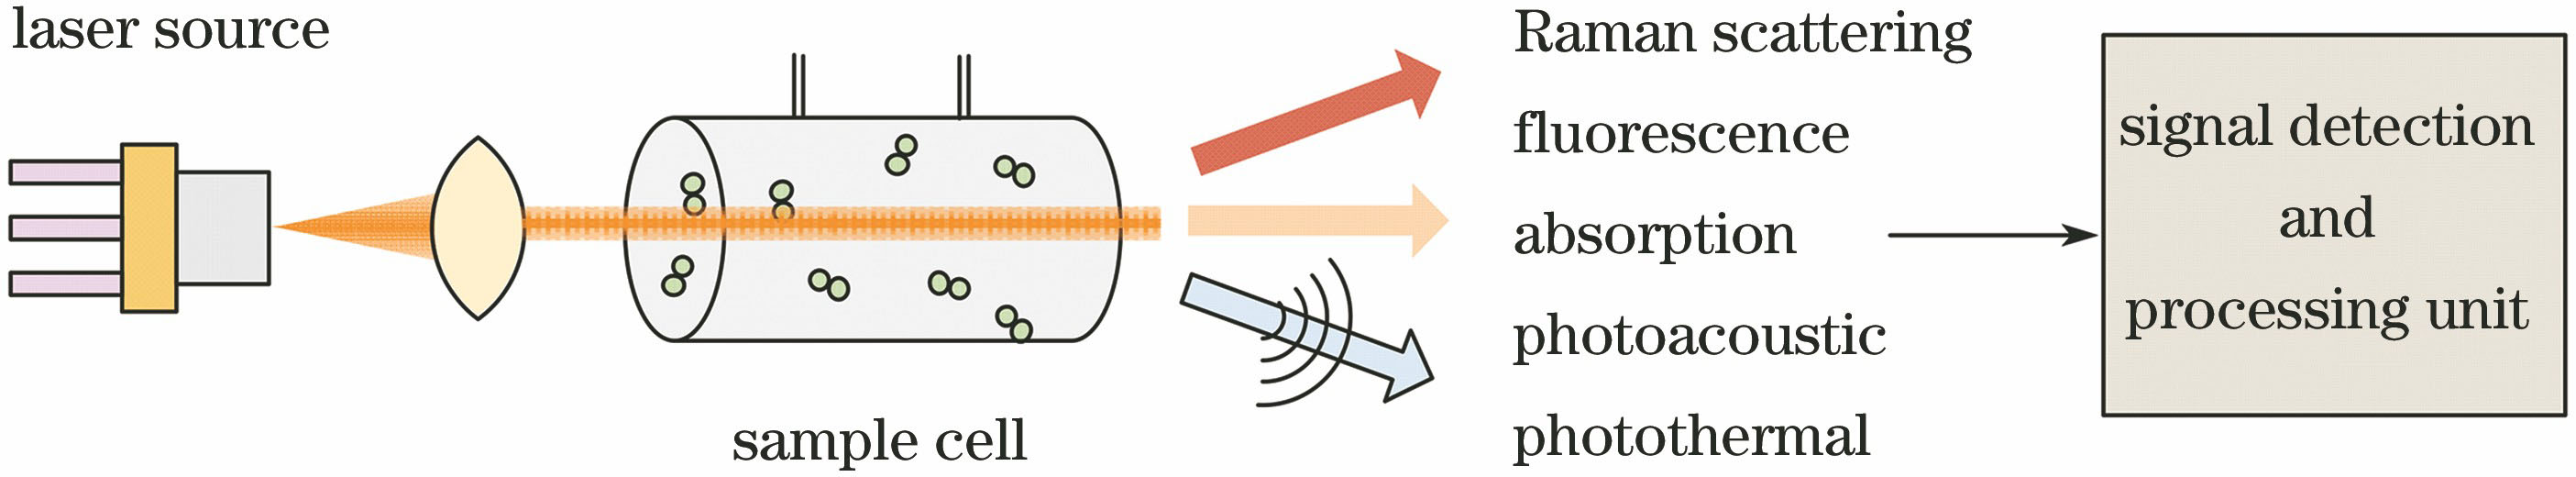 Basic elements of a laser spectroscopy system